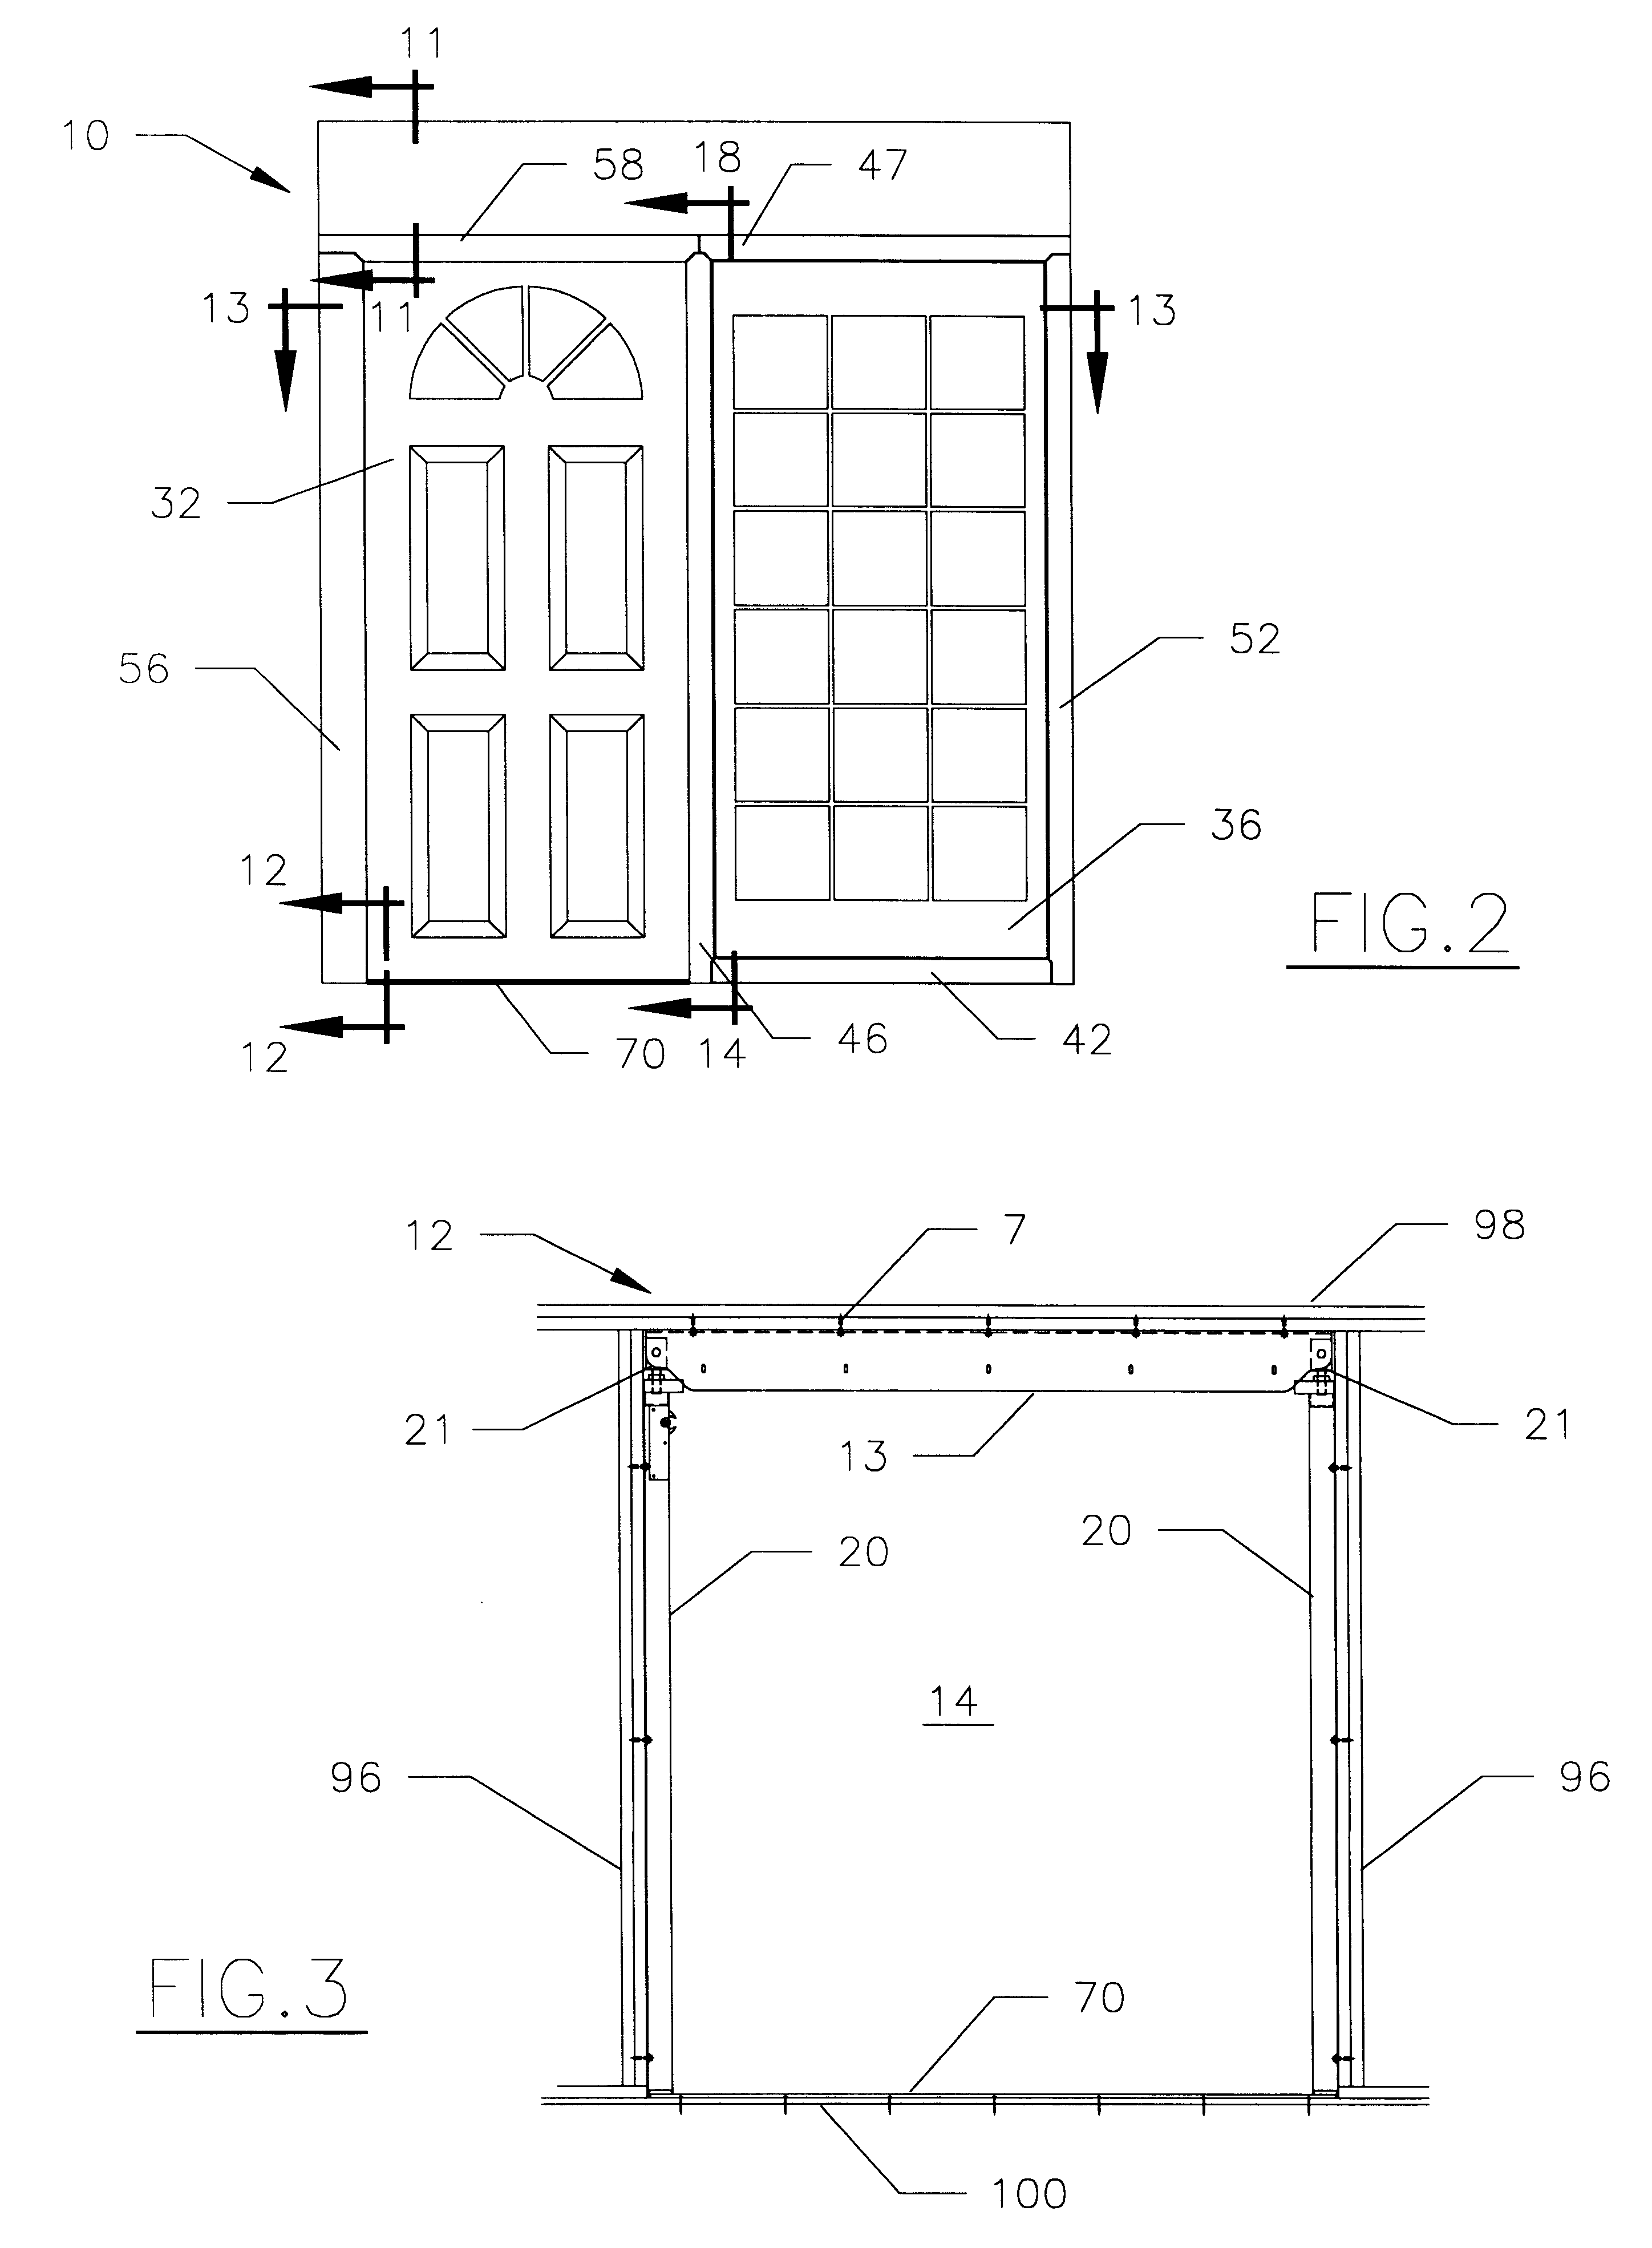 Residential motorized sliding door assembly